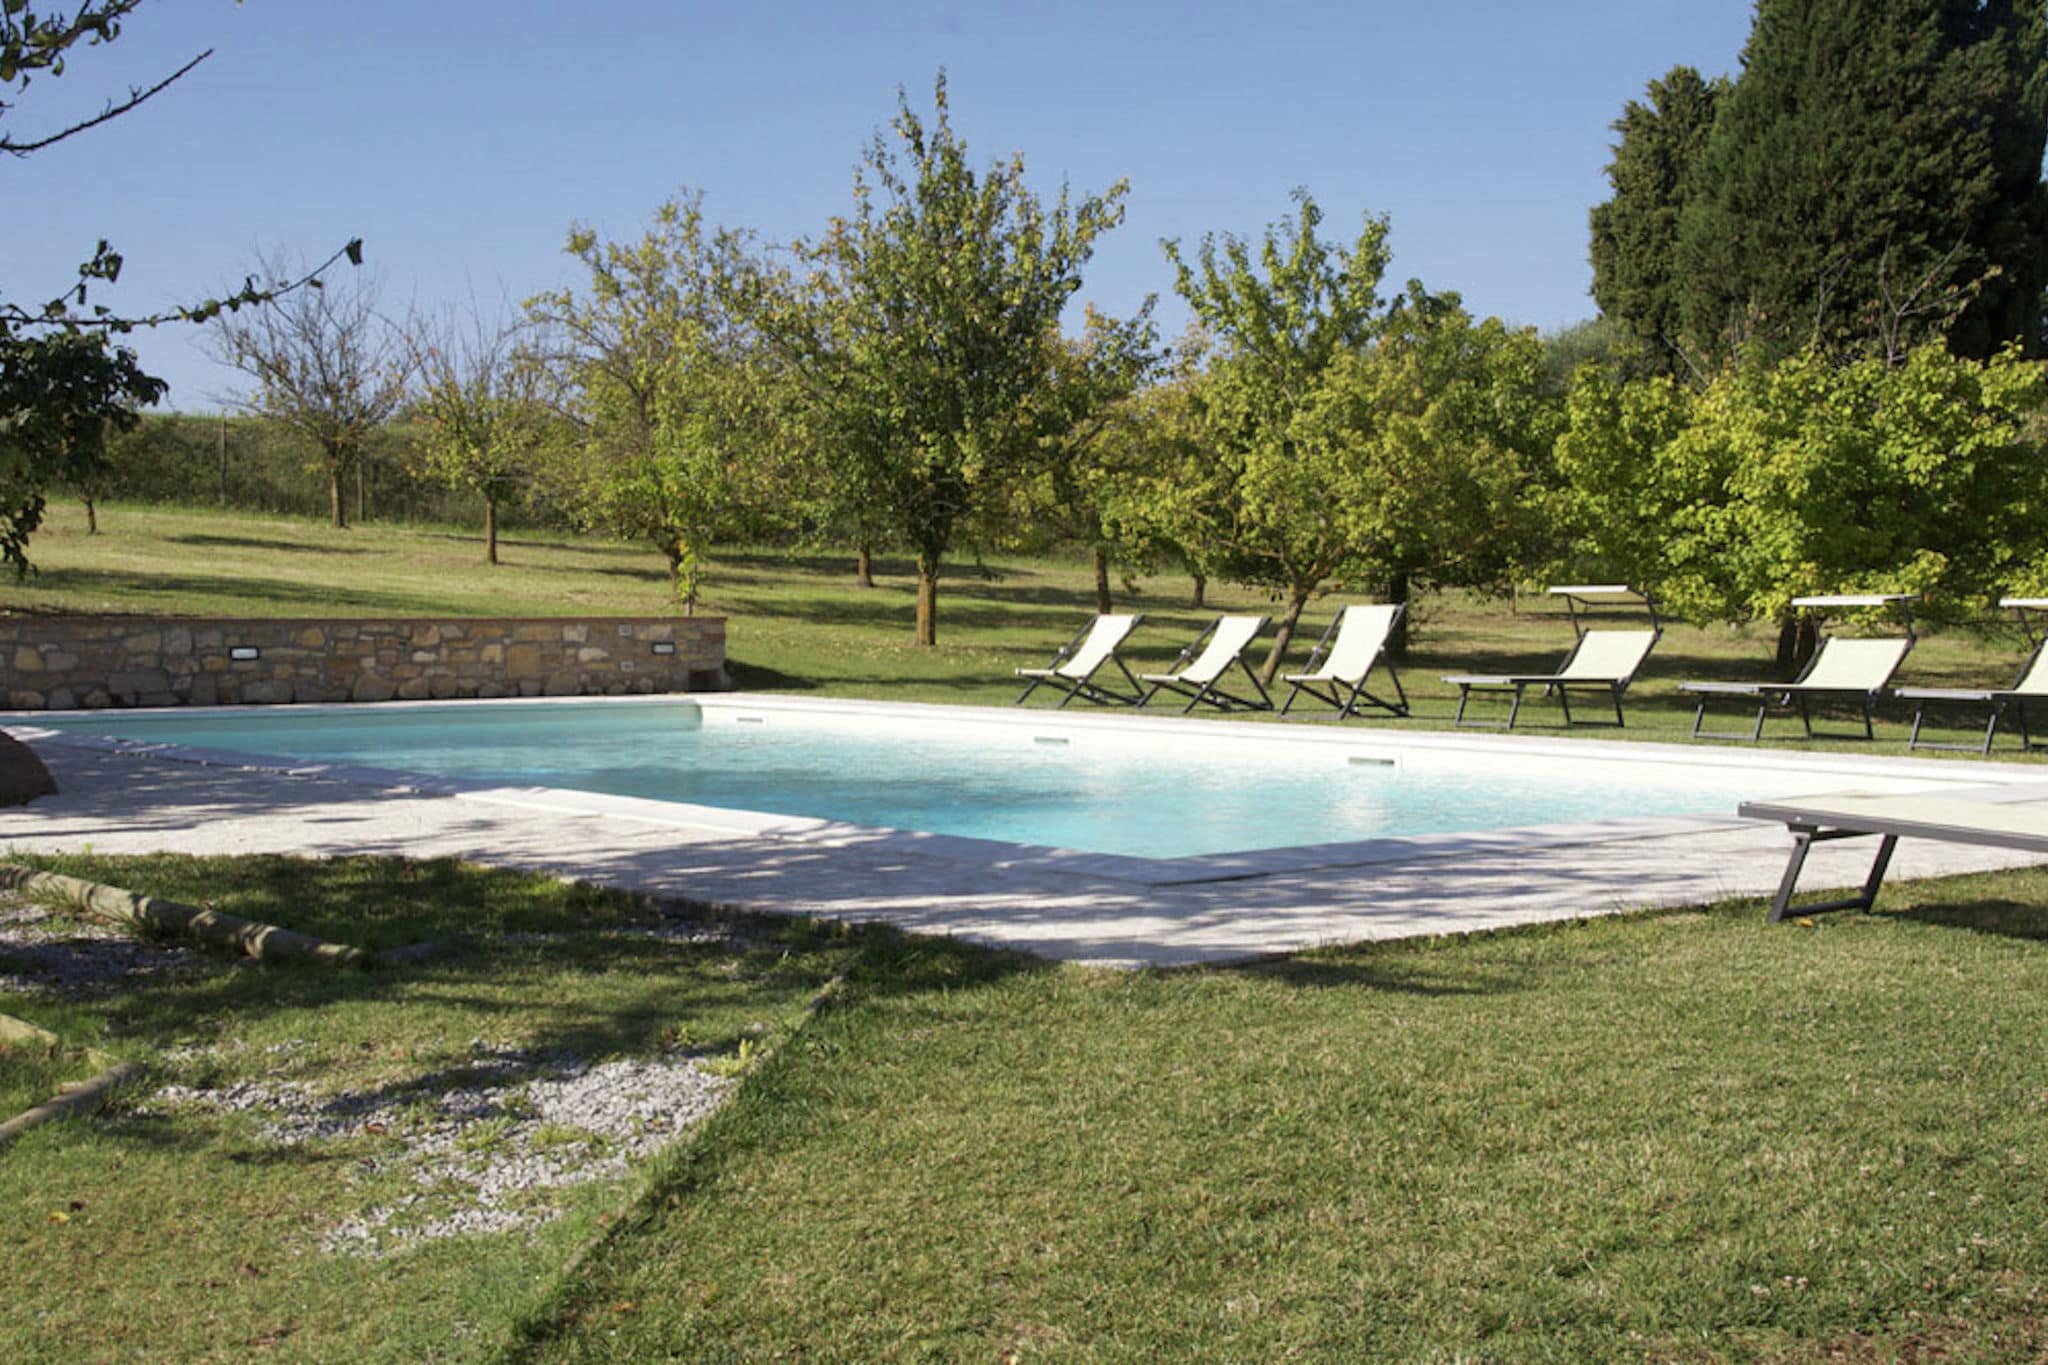 Prachtige villa met een privé zwembad